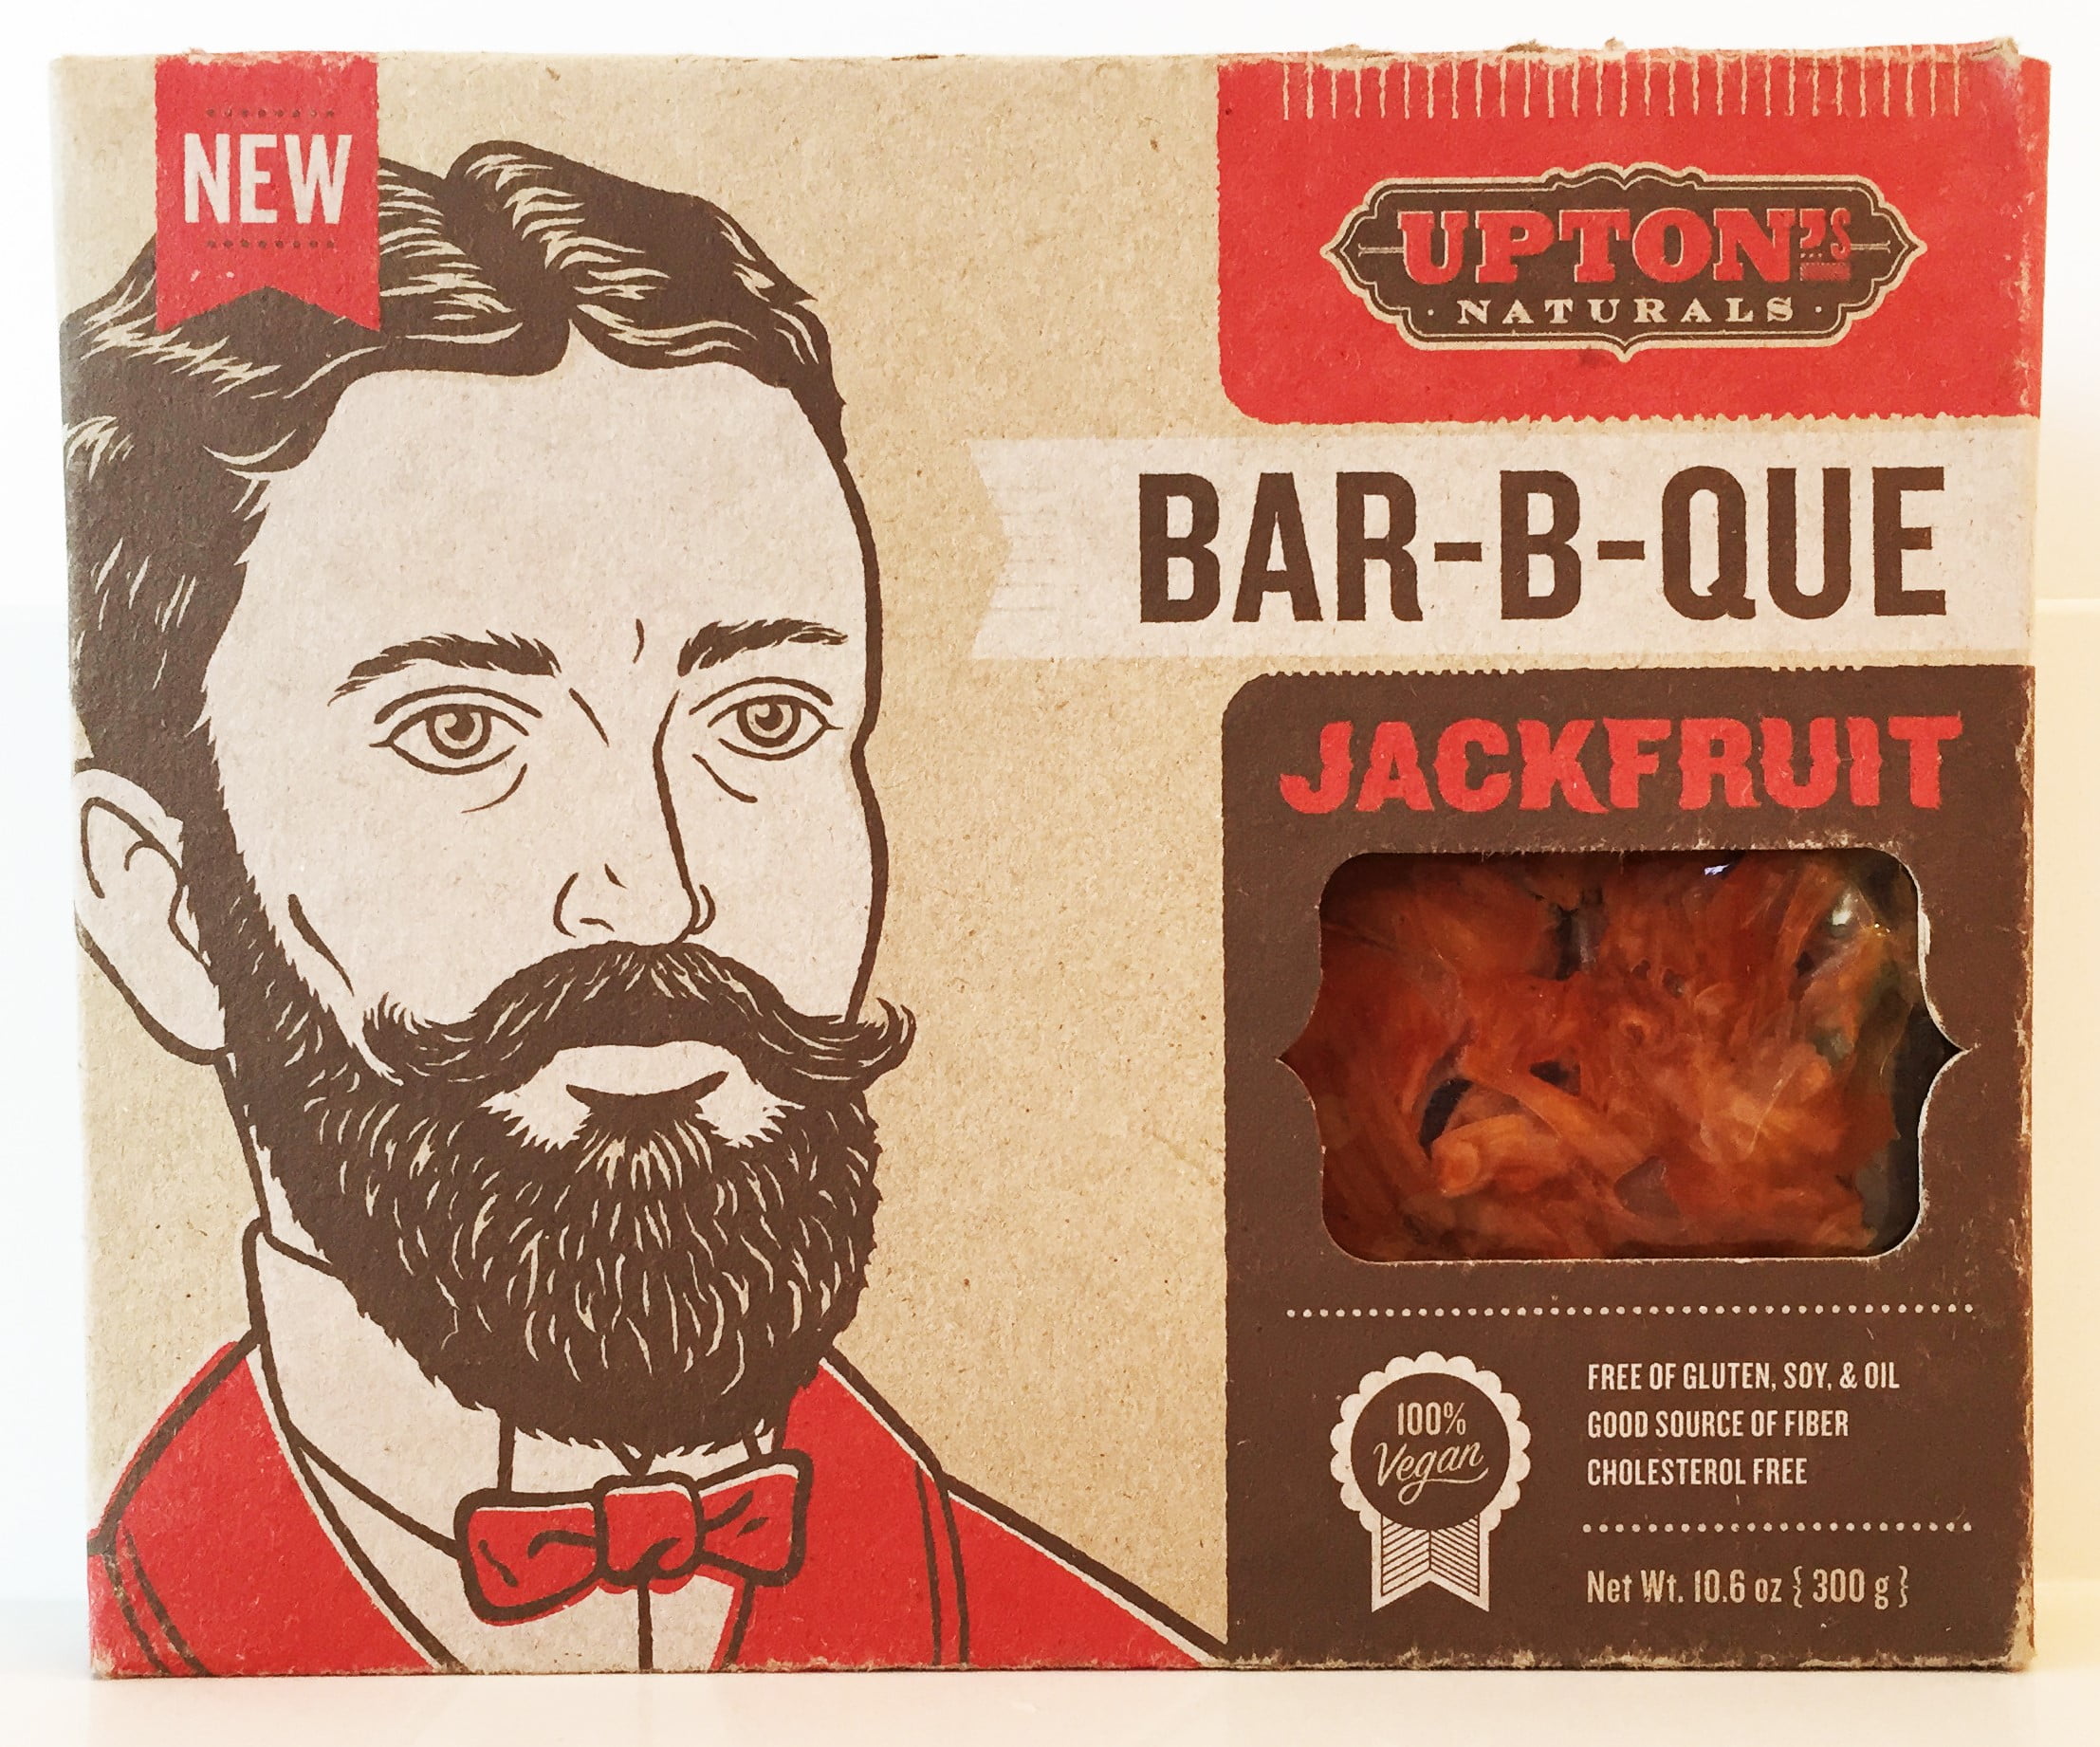 Upton's Bar-B-Que Jackfruit, 10.6 Oz - Walmart.com